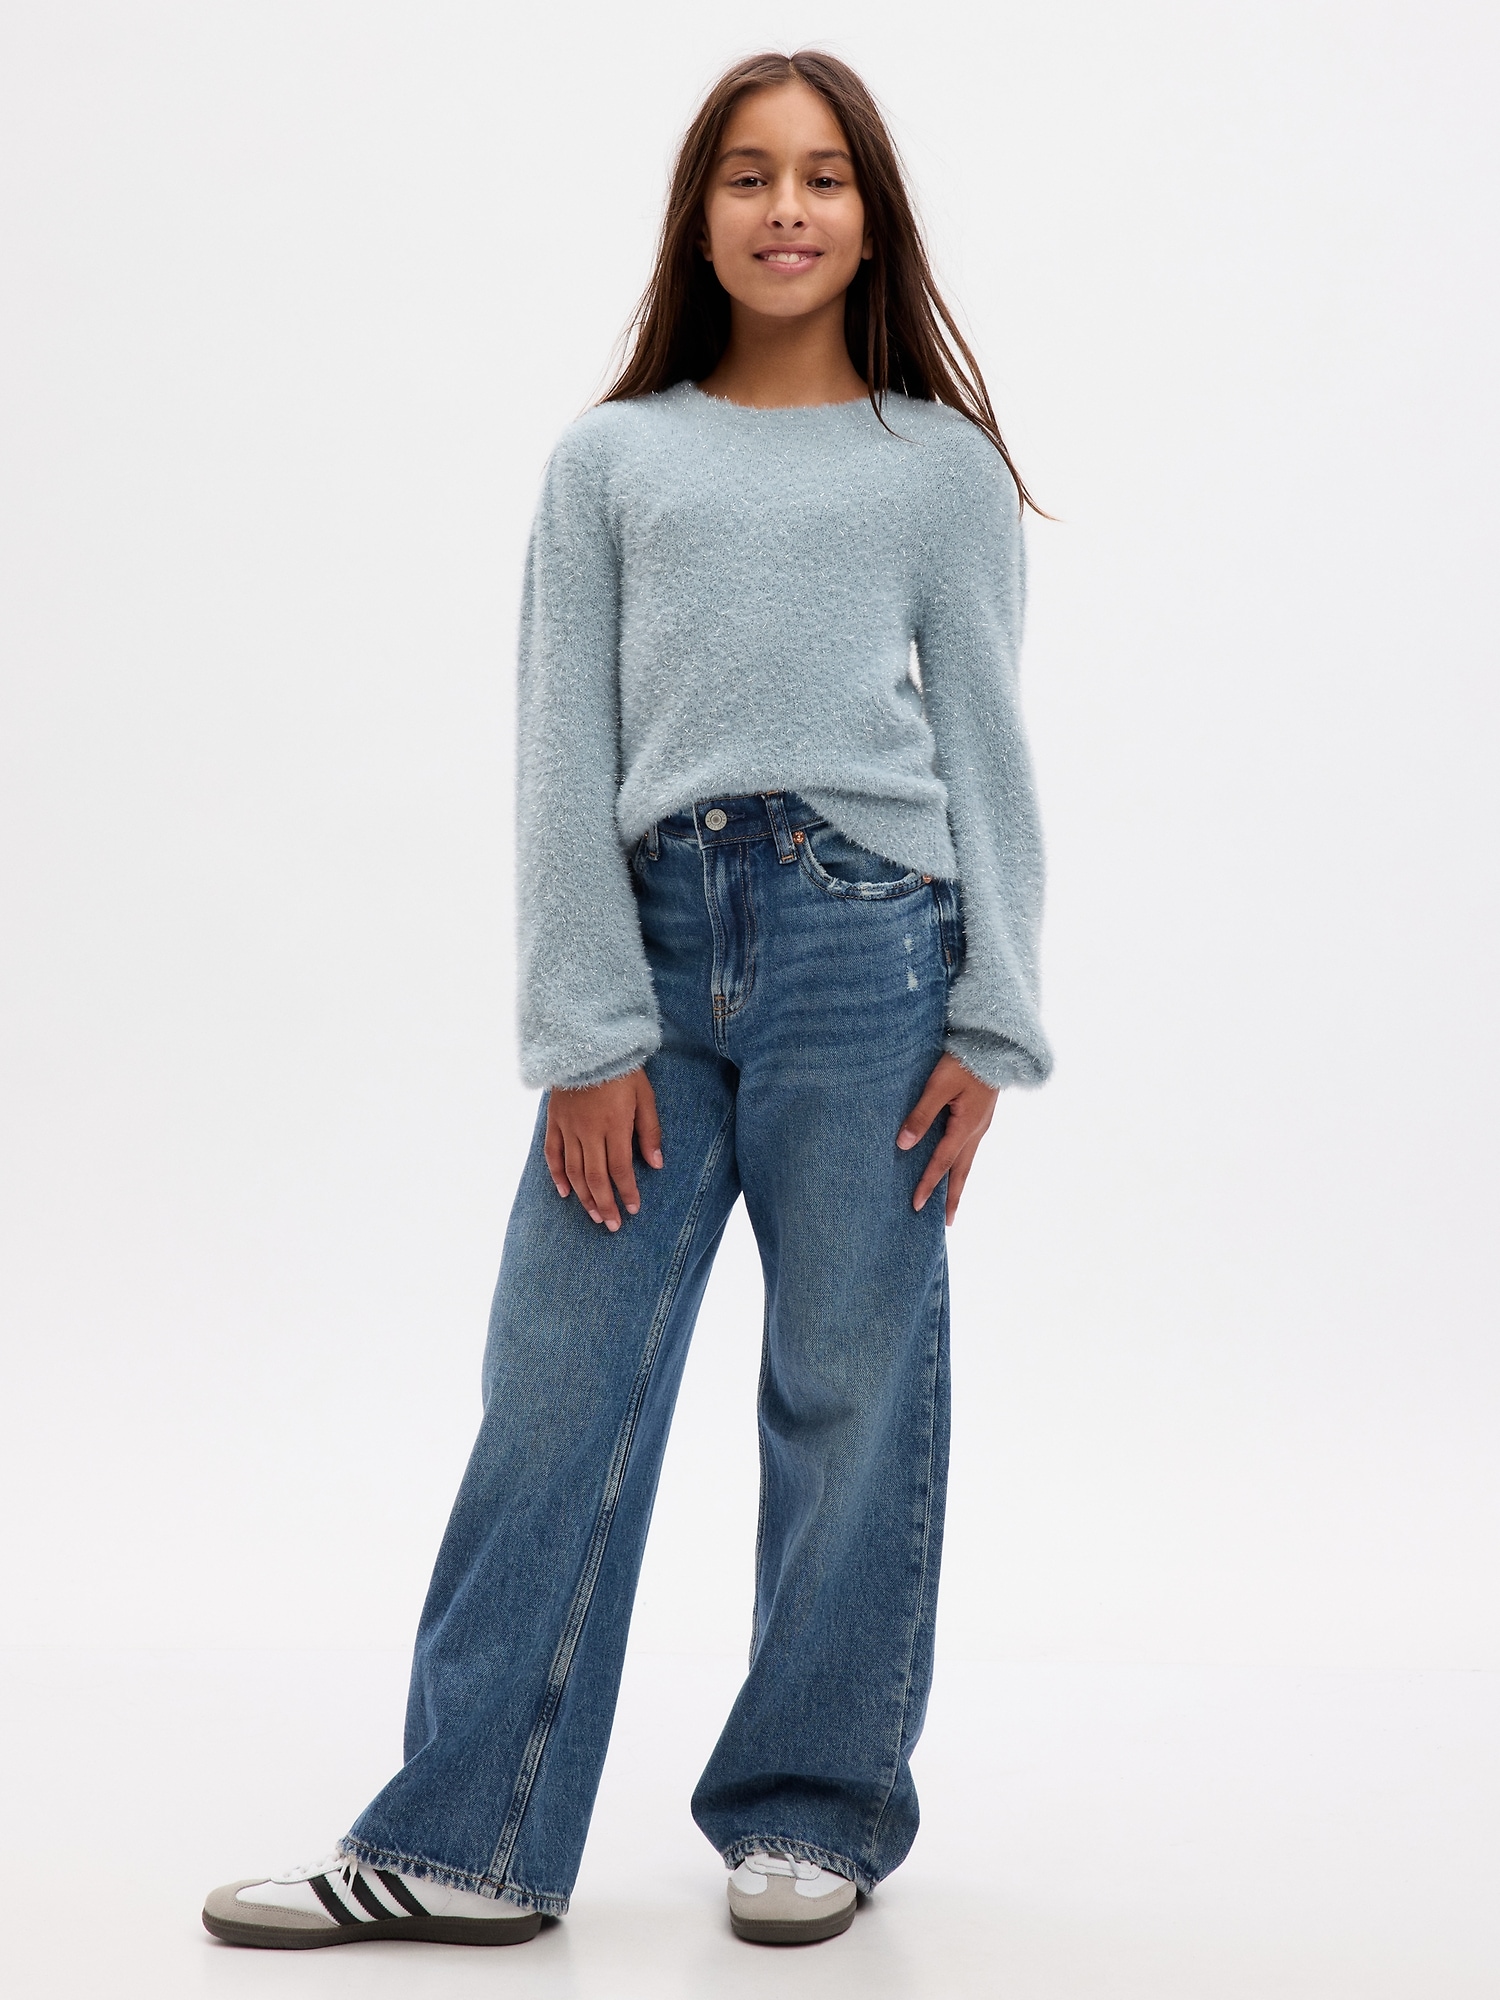 Gap Kids Metallic Shine Pullover Sweater